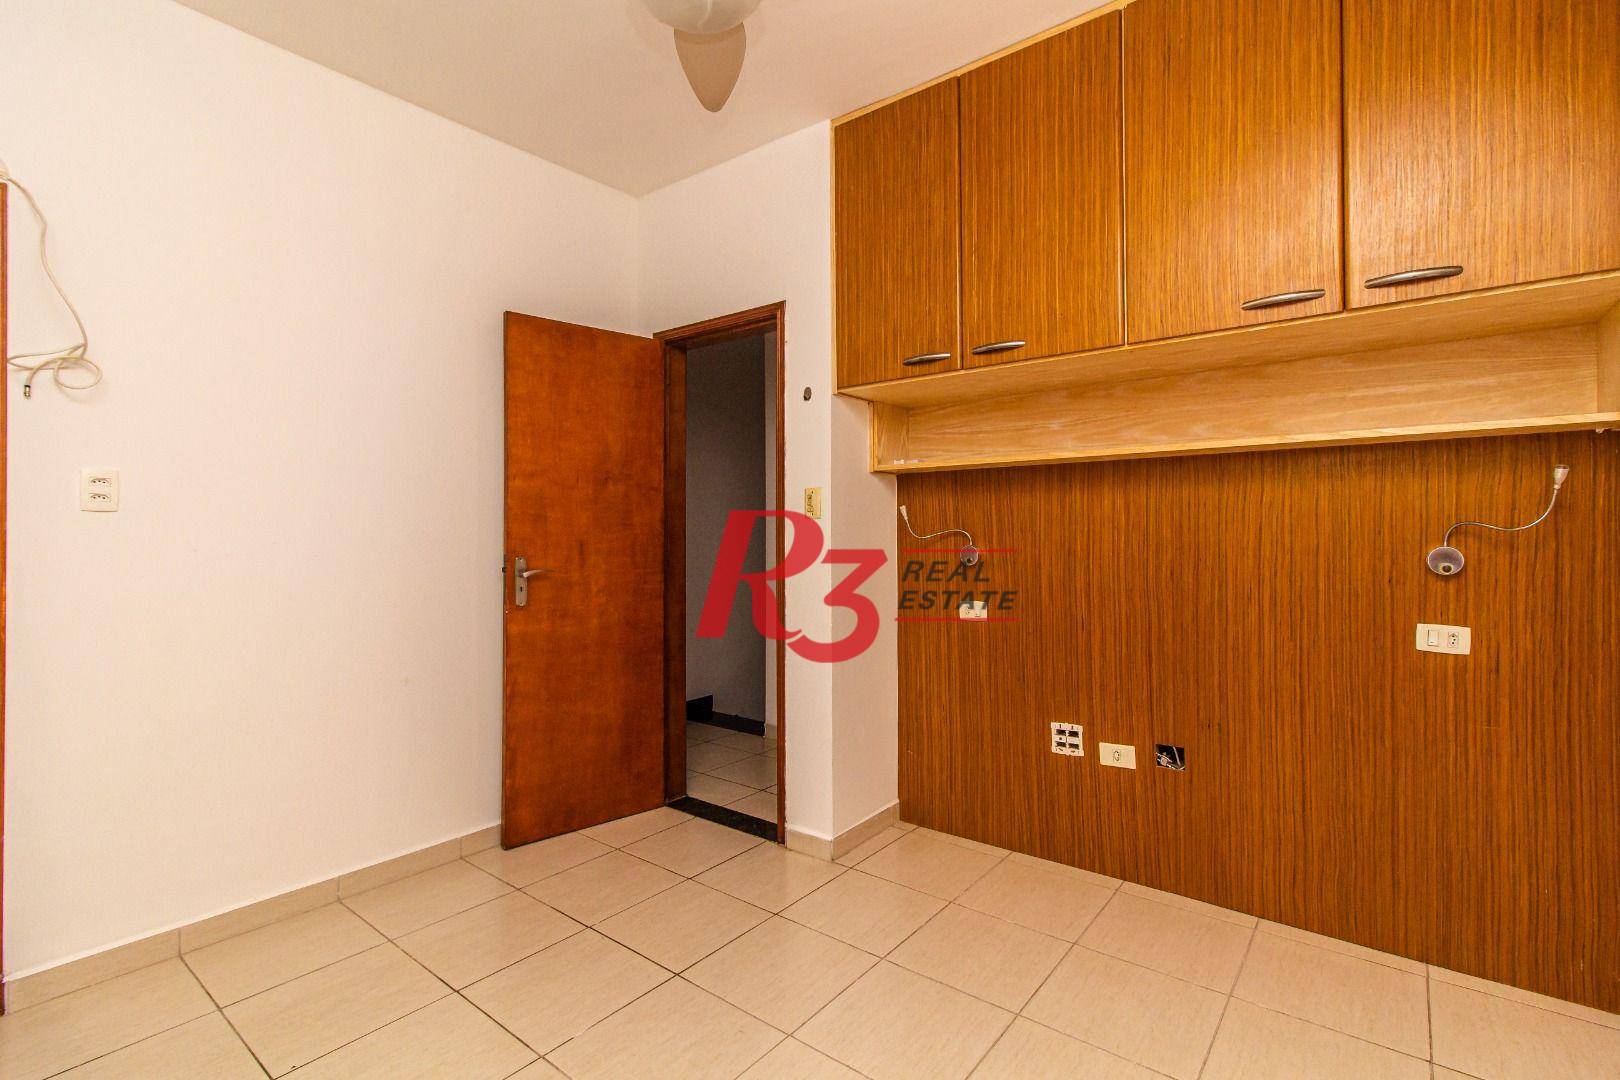 Sobrado duplex para venda ou locação com 3 dormitórios, 120 m² área construída - Aparecida - Santos/SP